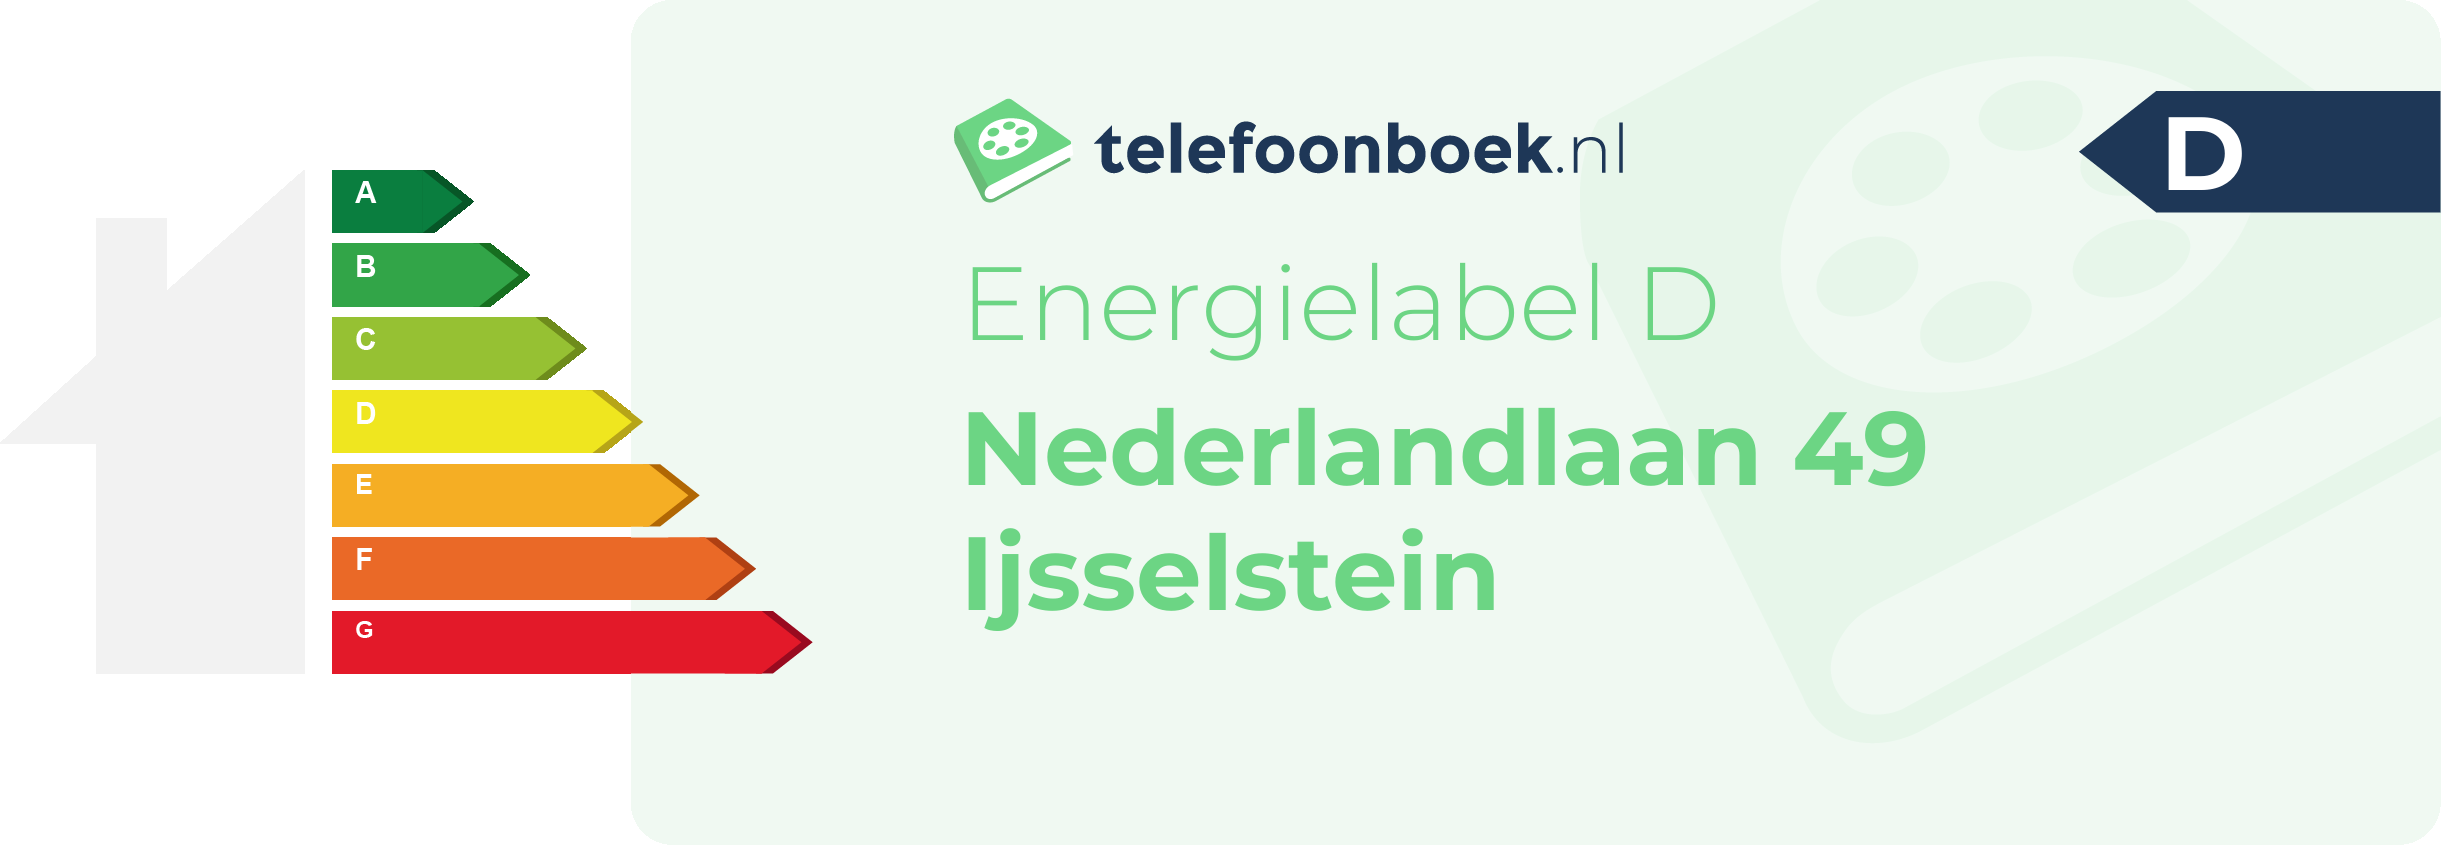 Energielabel Nederlandlaan 49 Ijsselstein